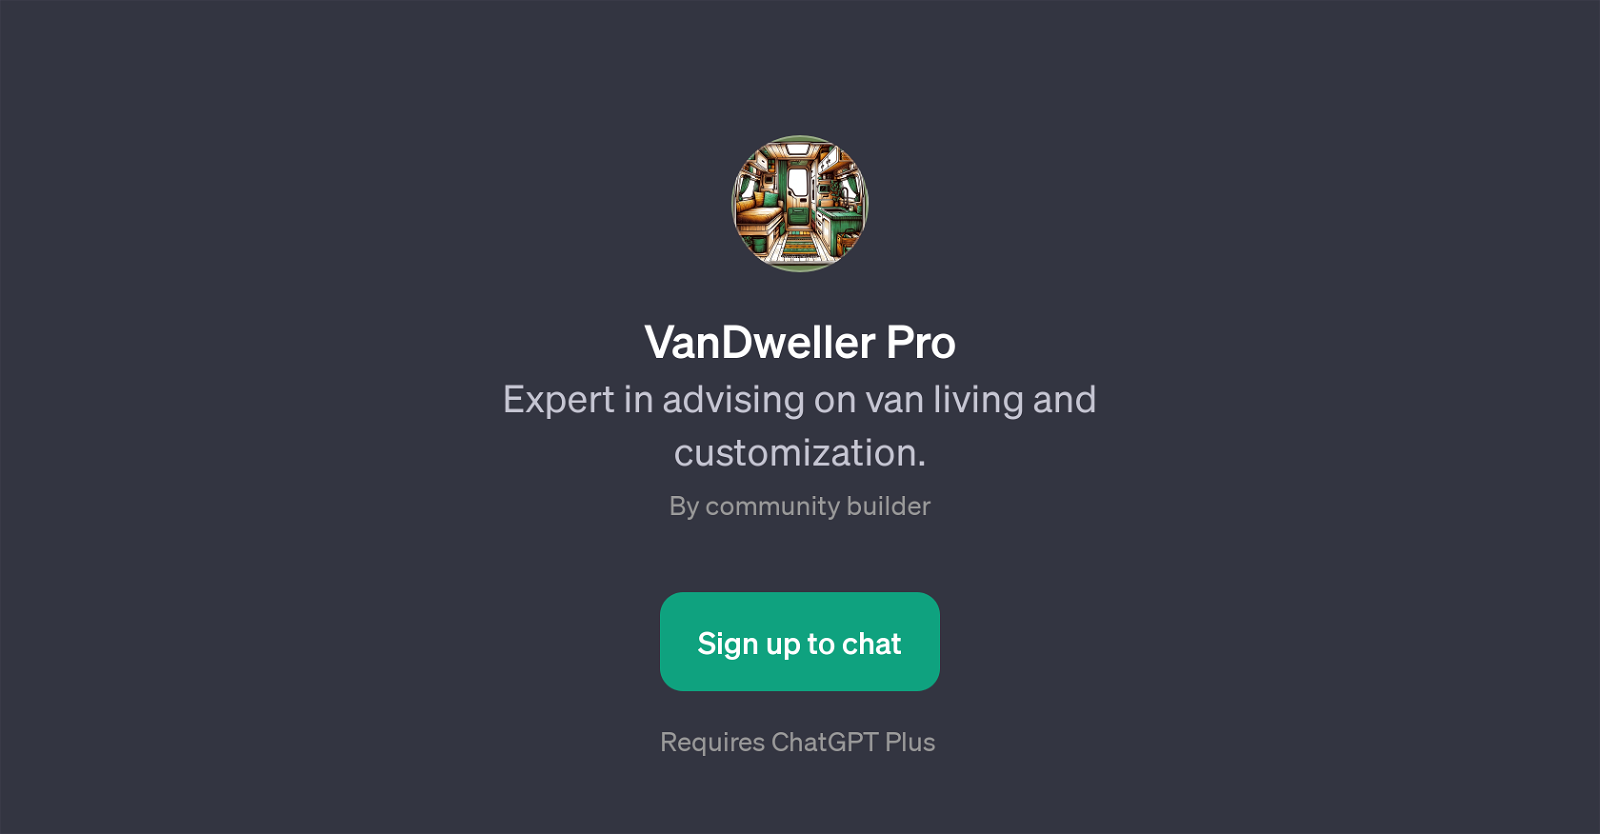 VanDweller Pro website